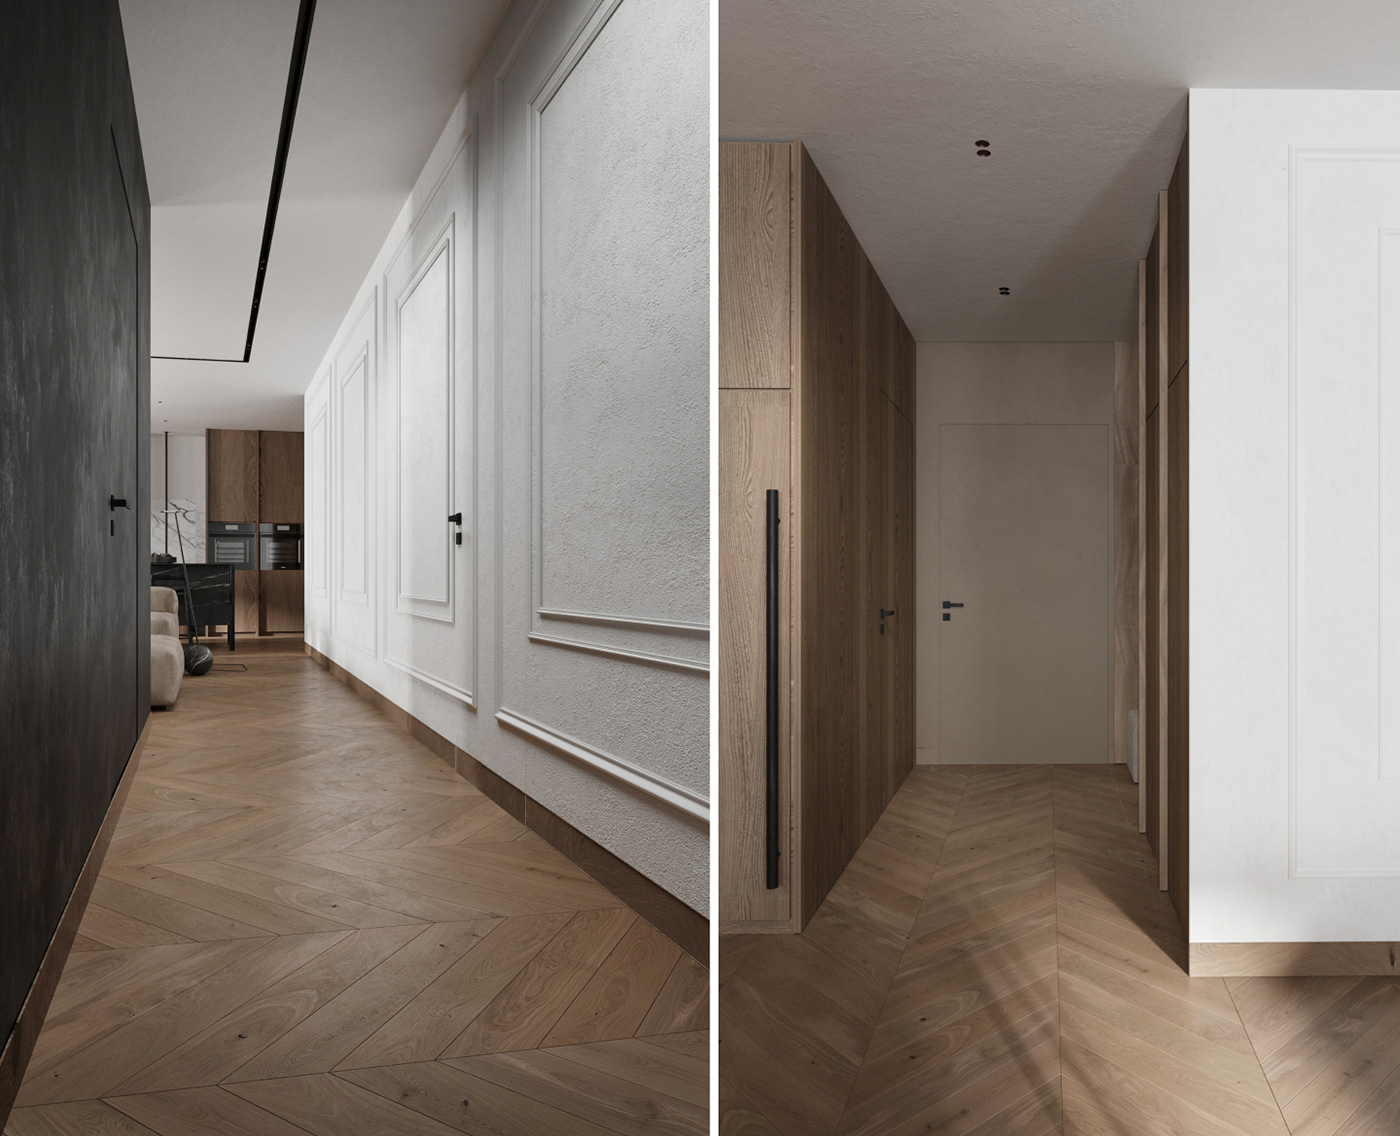 3ds max 3dsmax architecture corona Interior interior design  kitchen Render room visualization